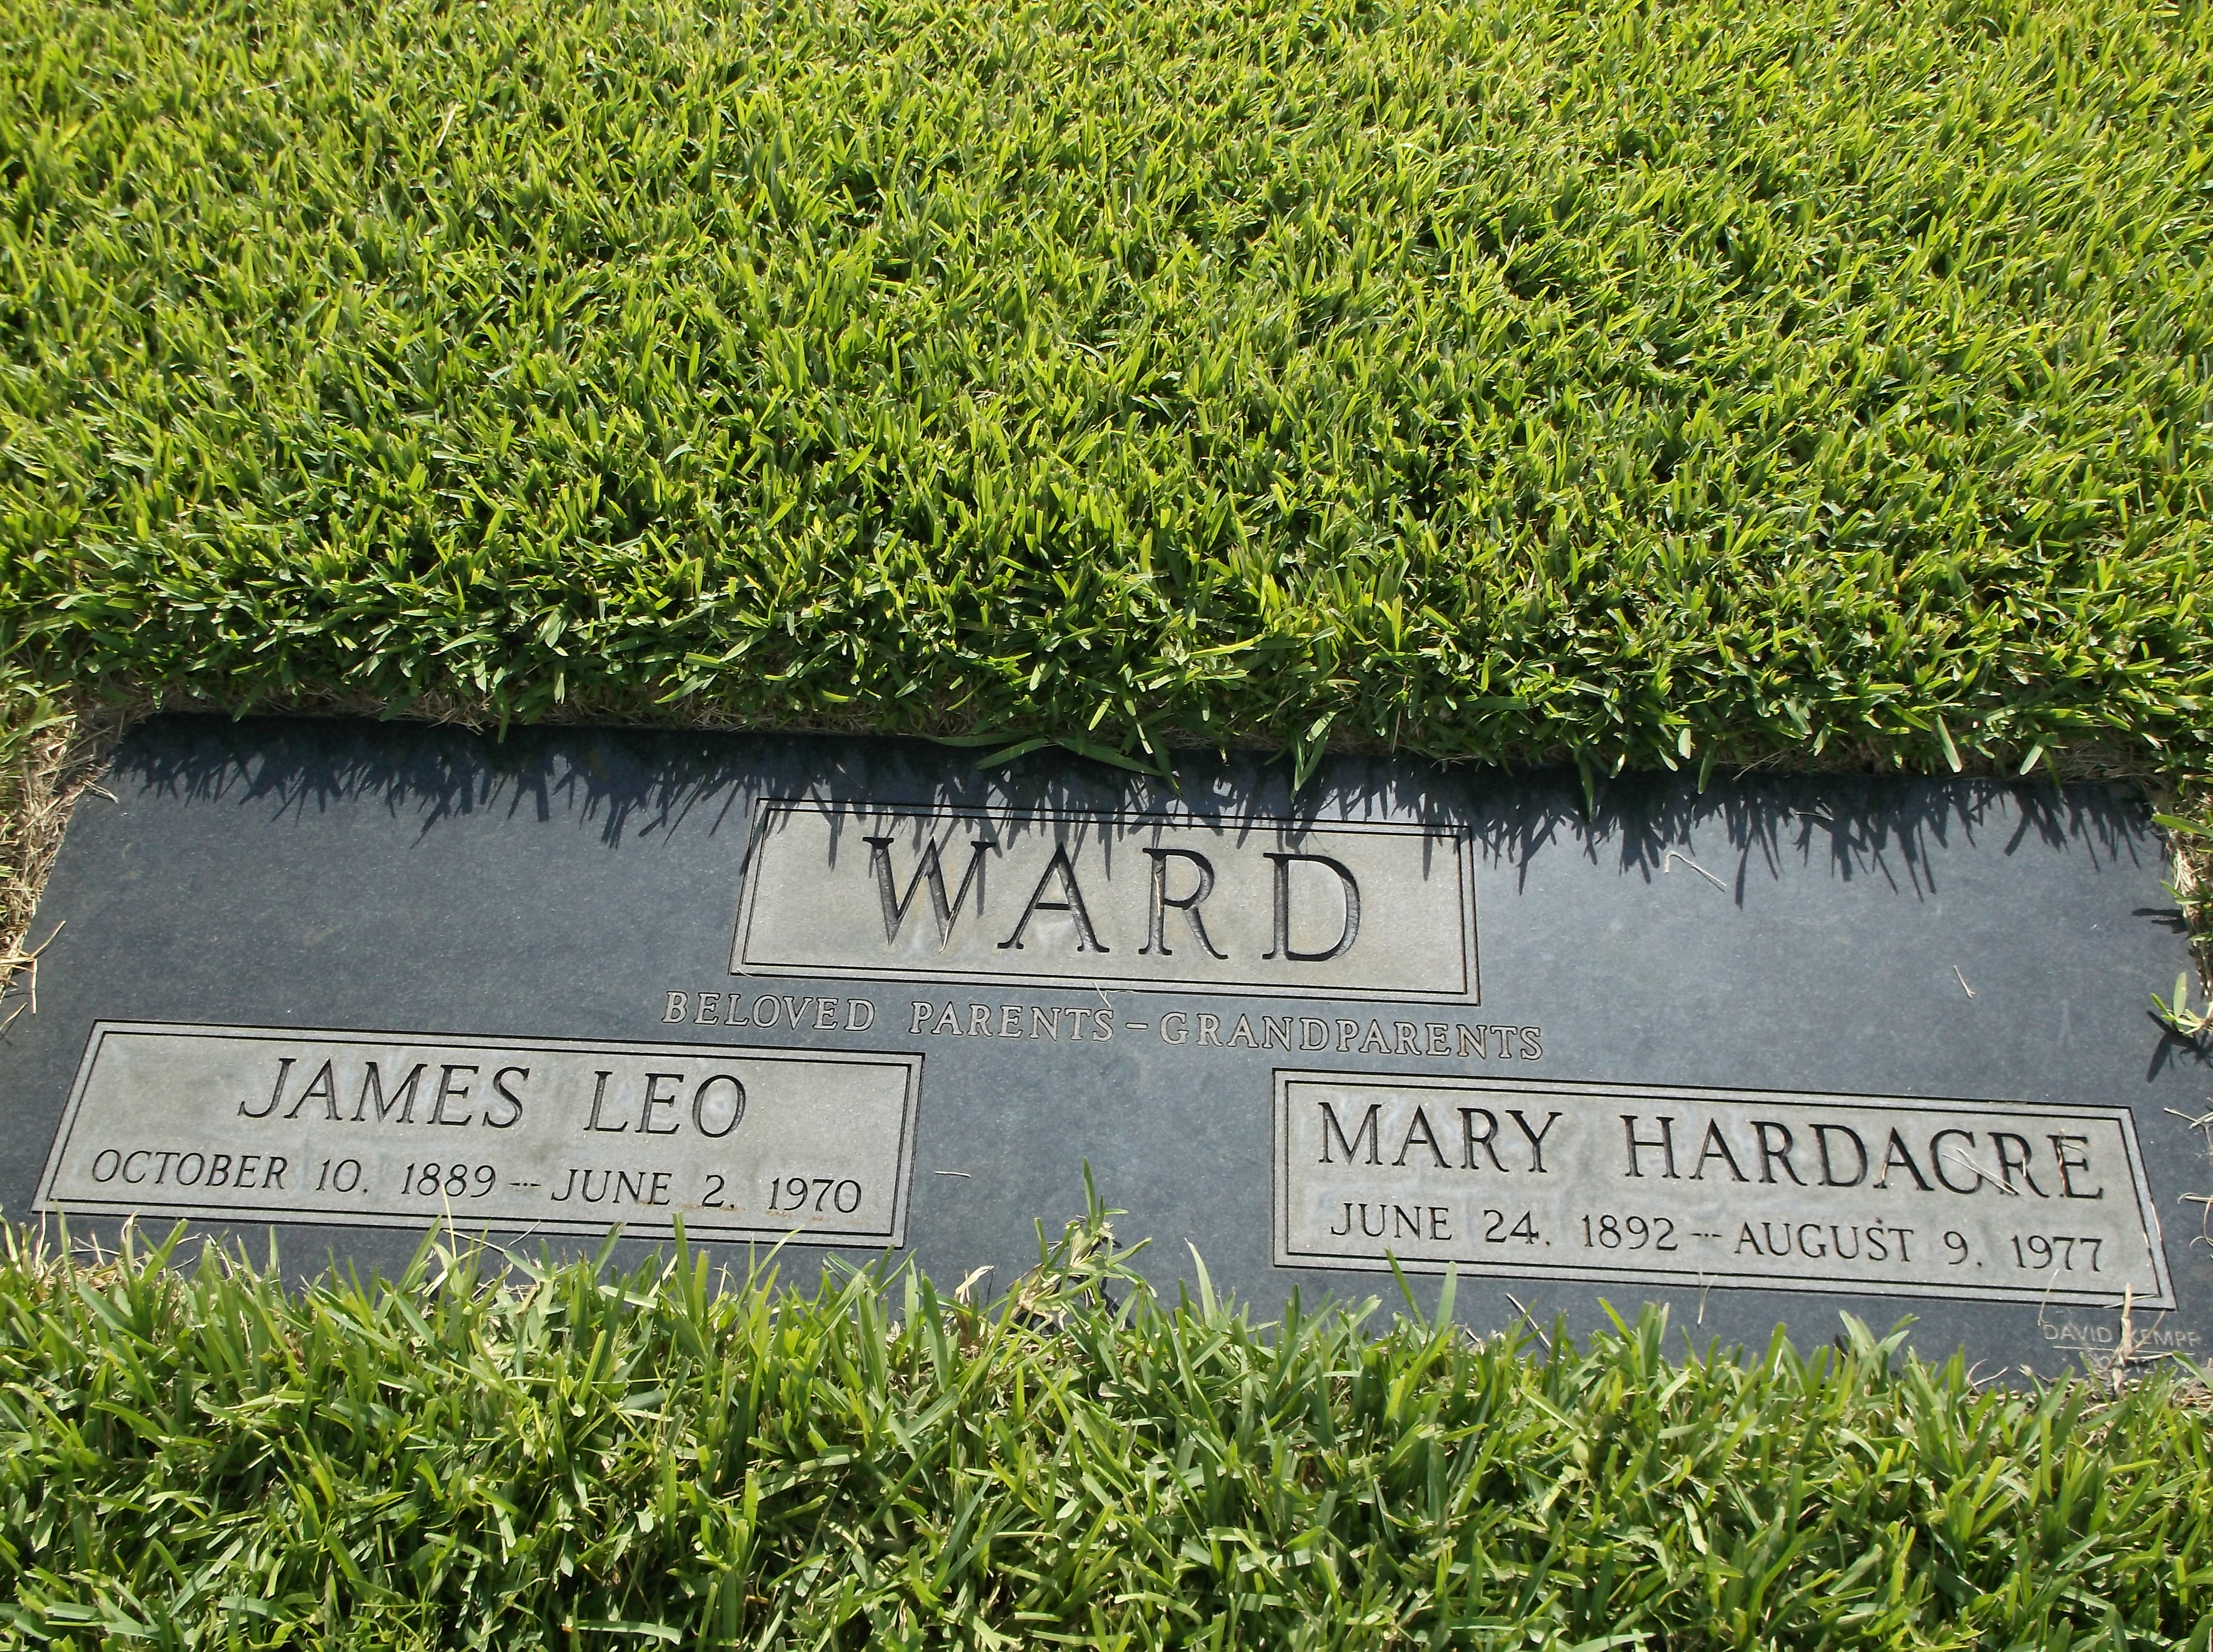 Mary Hardacre Ward